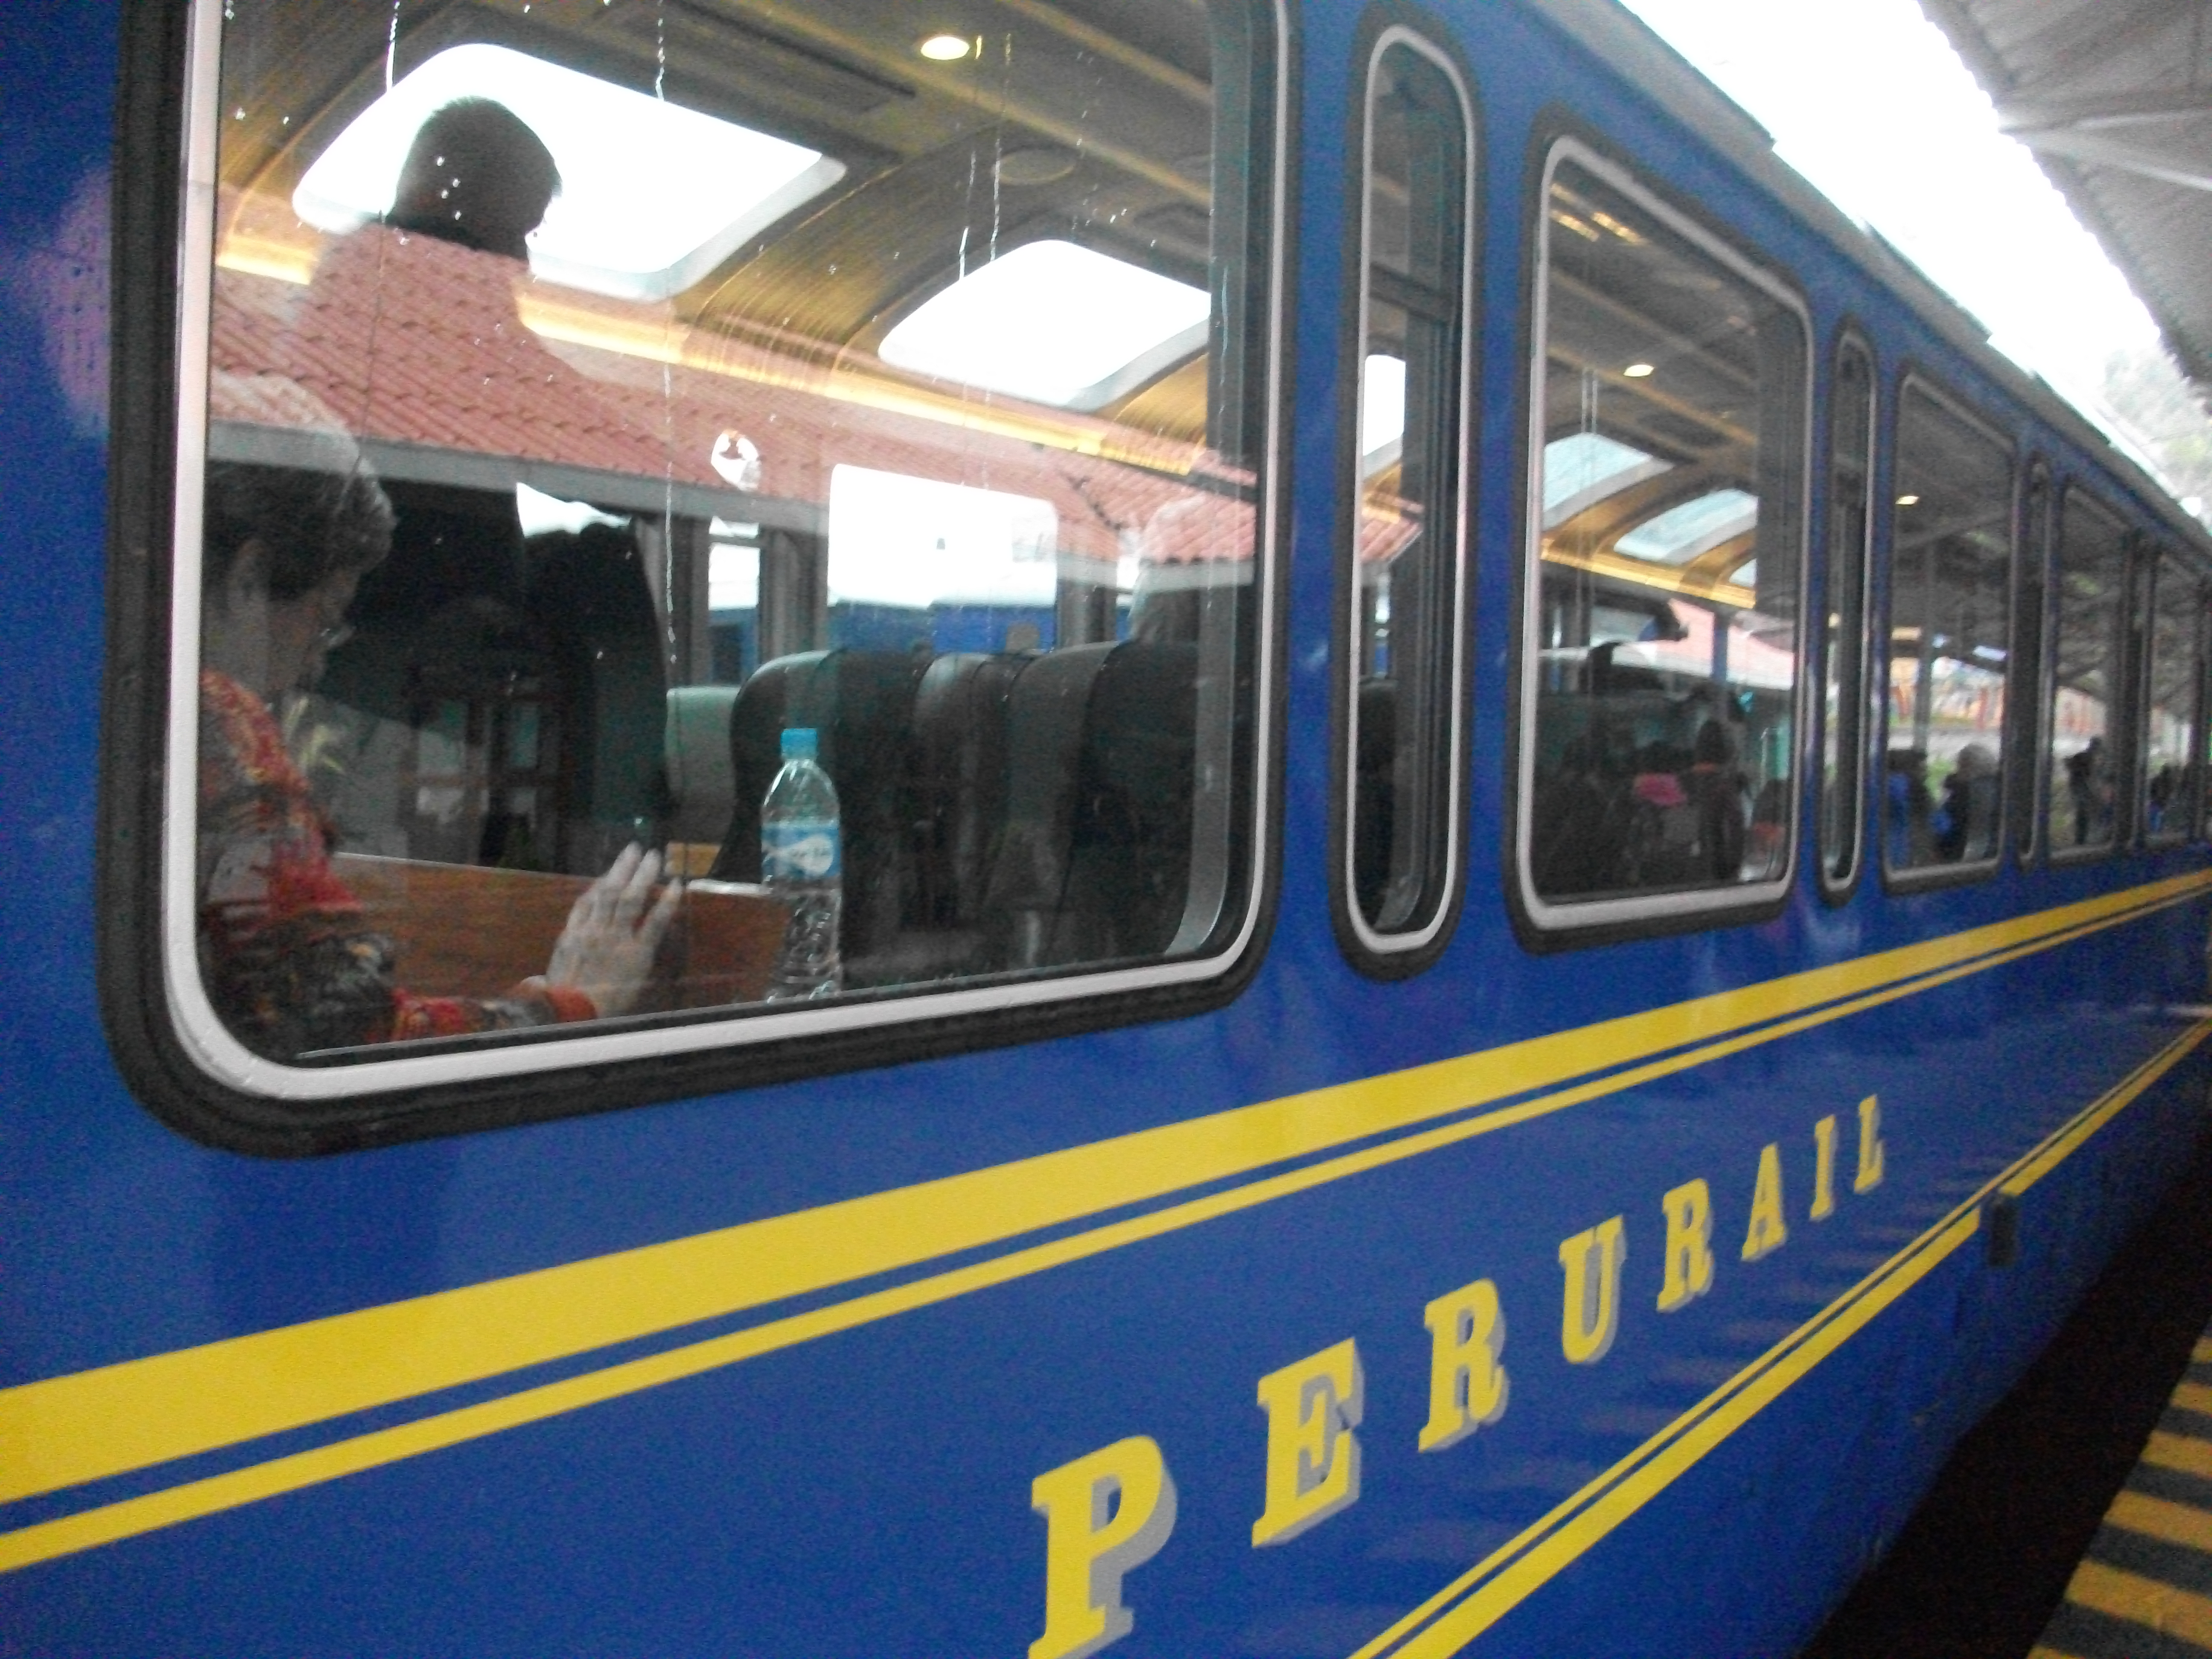 ペルーレイル<br>旅の気分を存分に演出してくれるペルーレイル列車にのって、いよいよマチュピチュへ続くインカトレッキングスタート地点へ出発です。